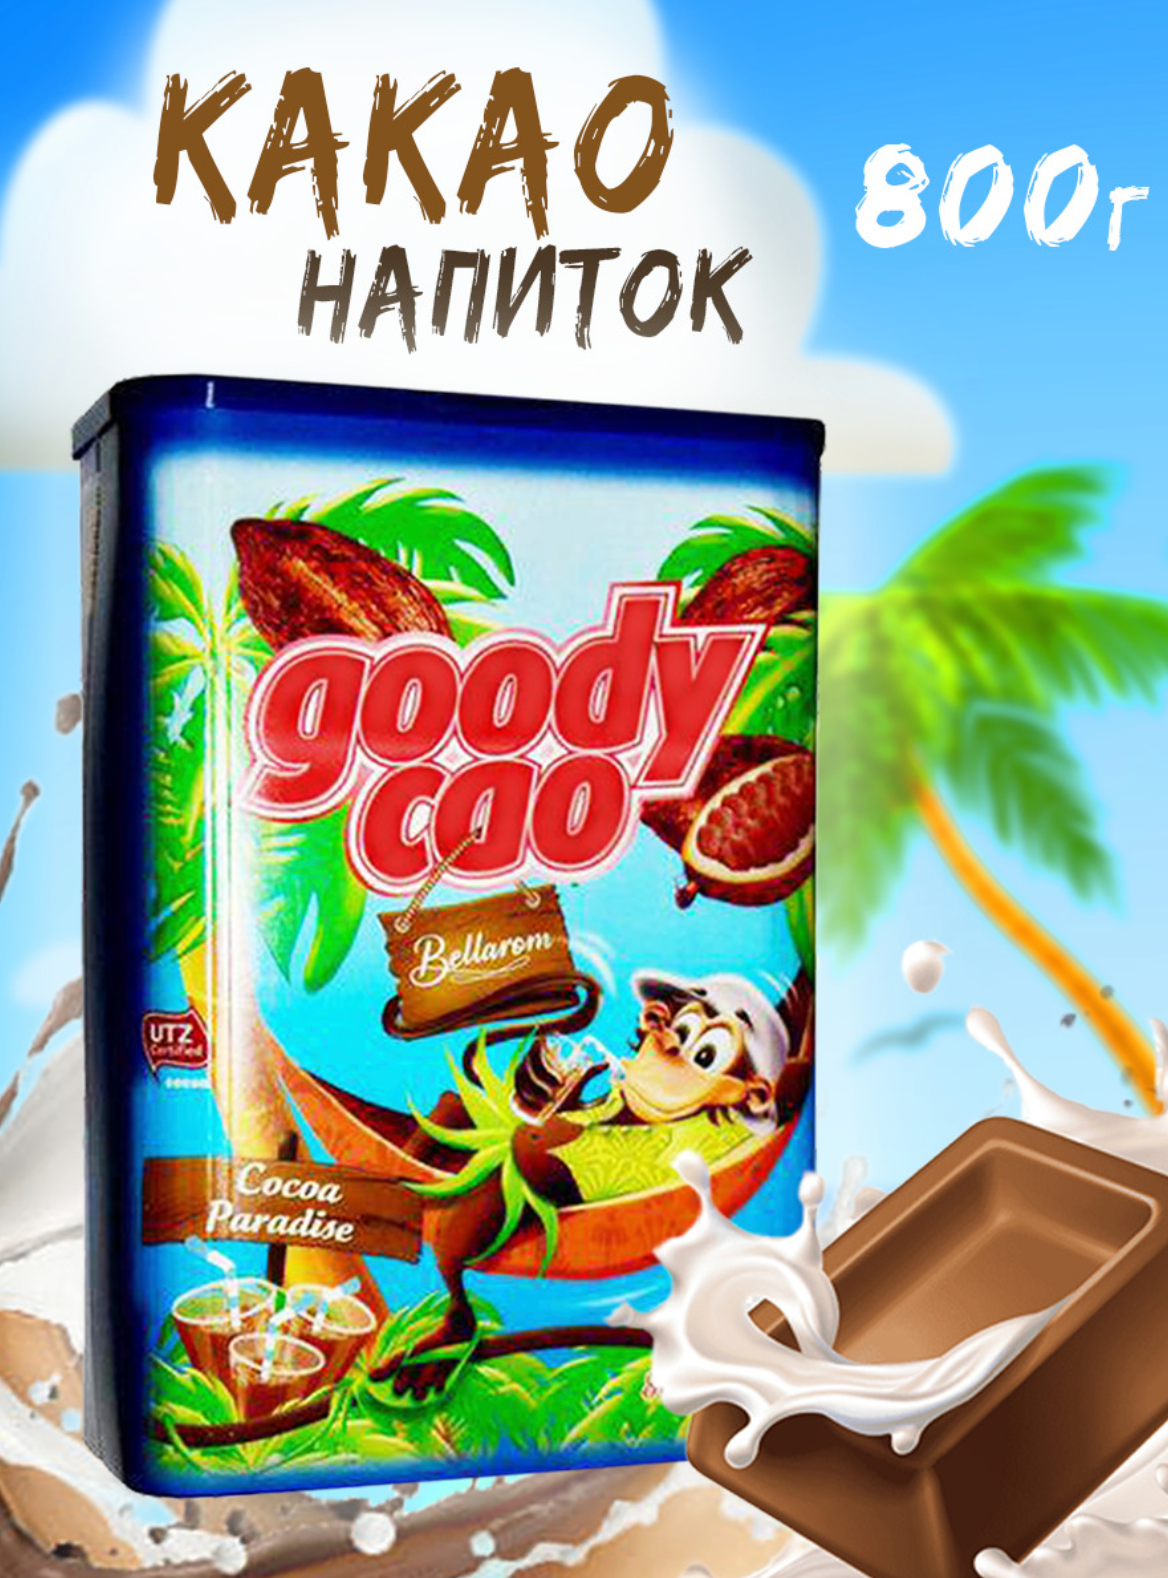 Какао растворимый Goody Cao Bellarom 800гр. (Германия) - фотография № 3